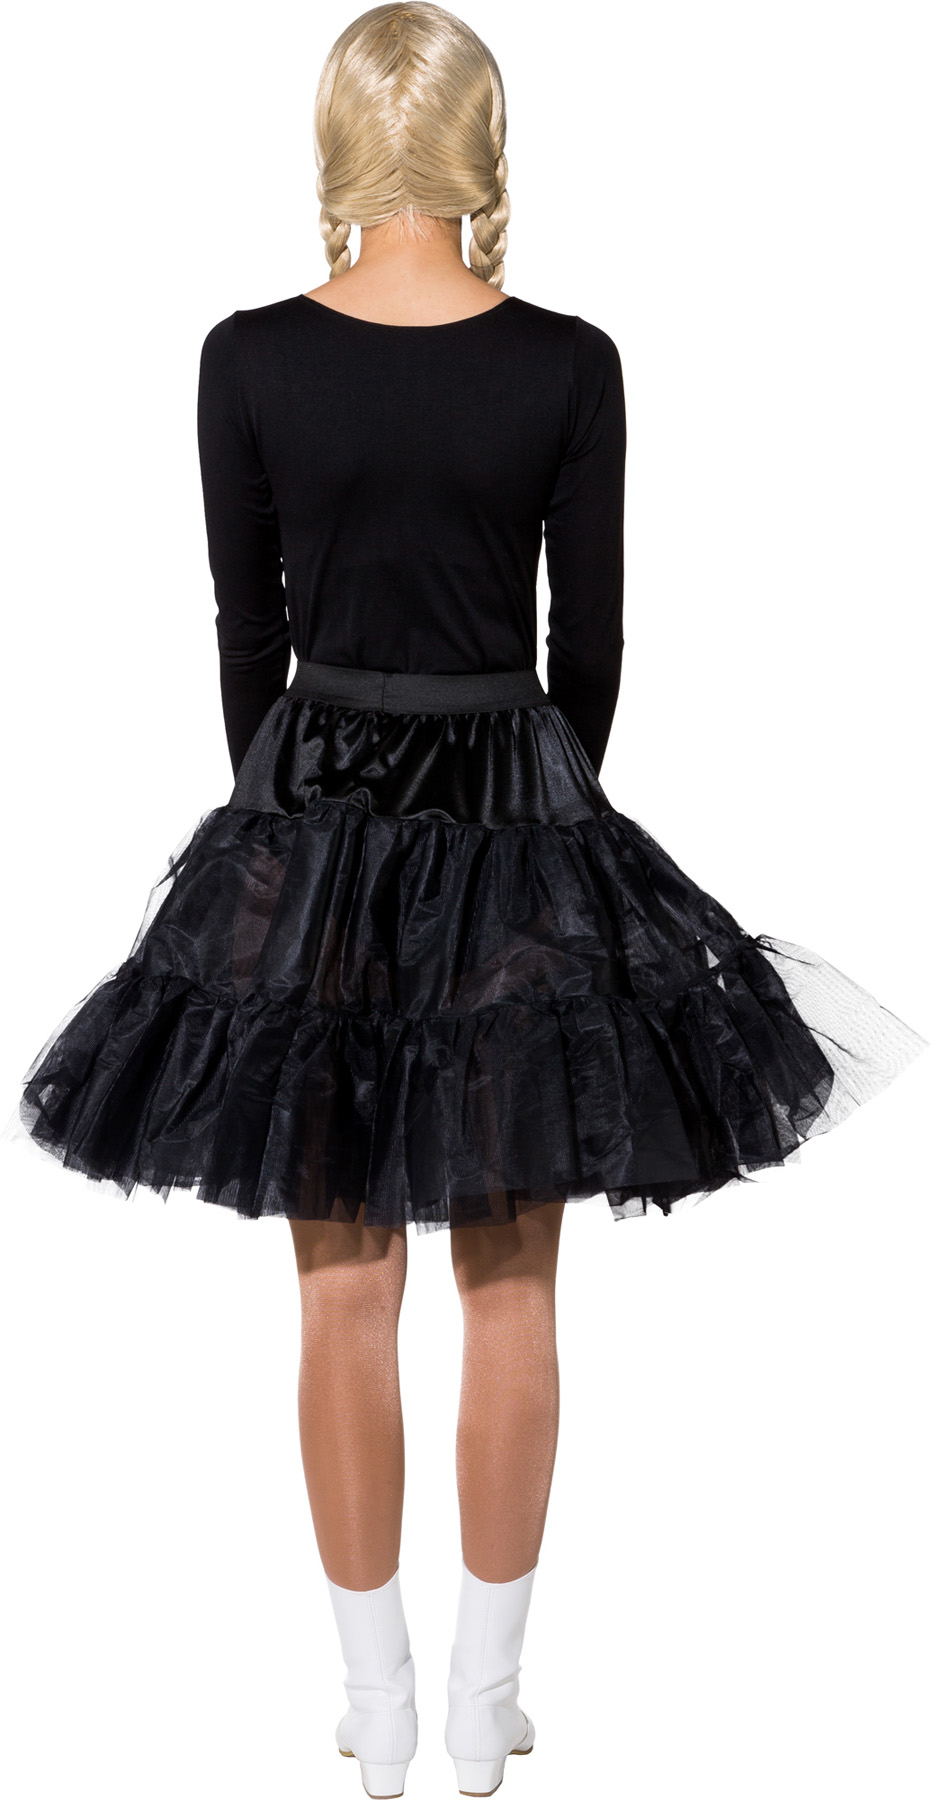 Petticoat knee length, black